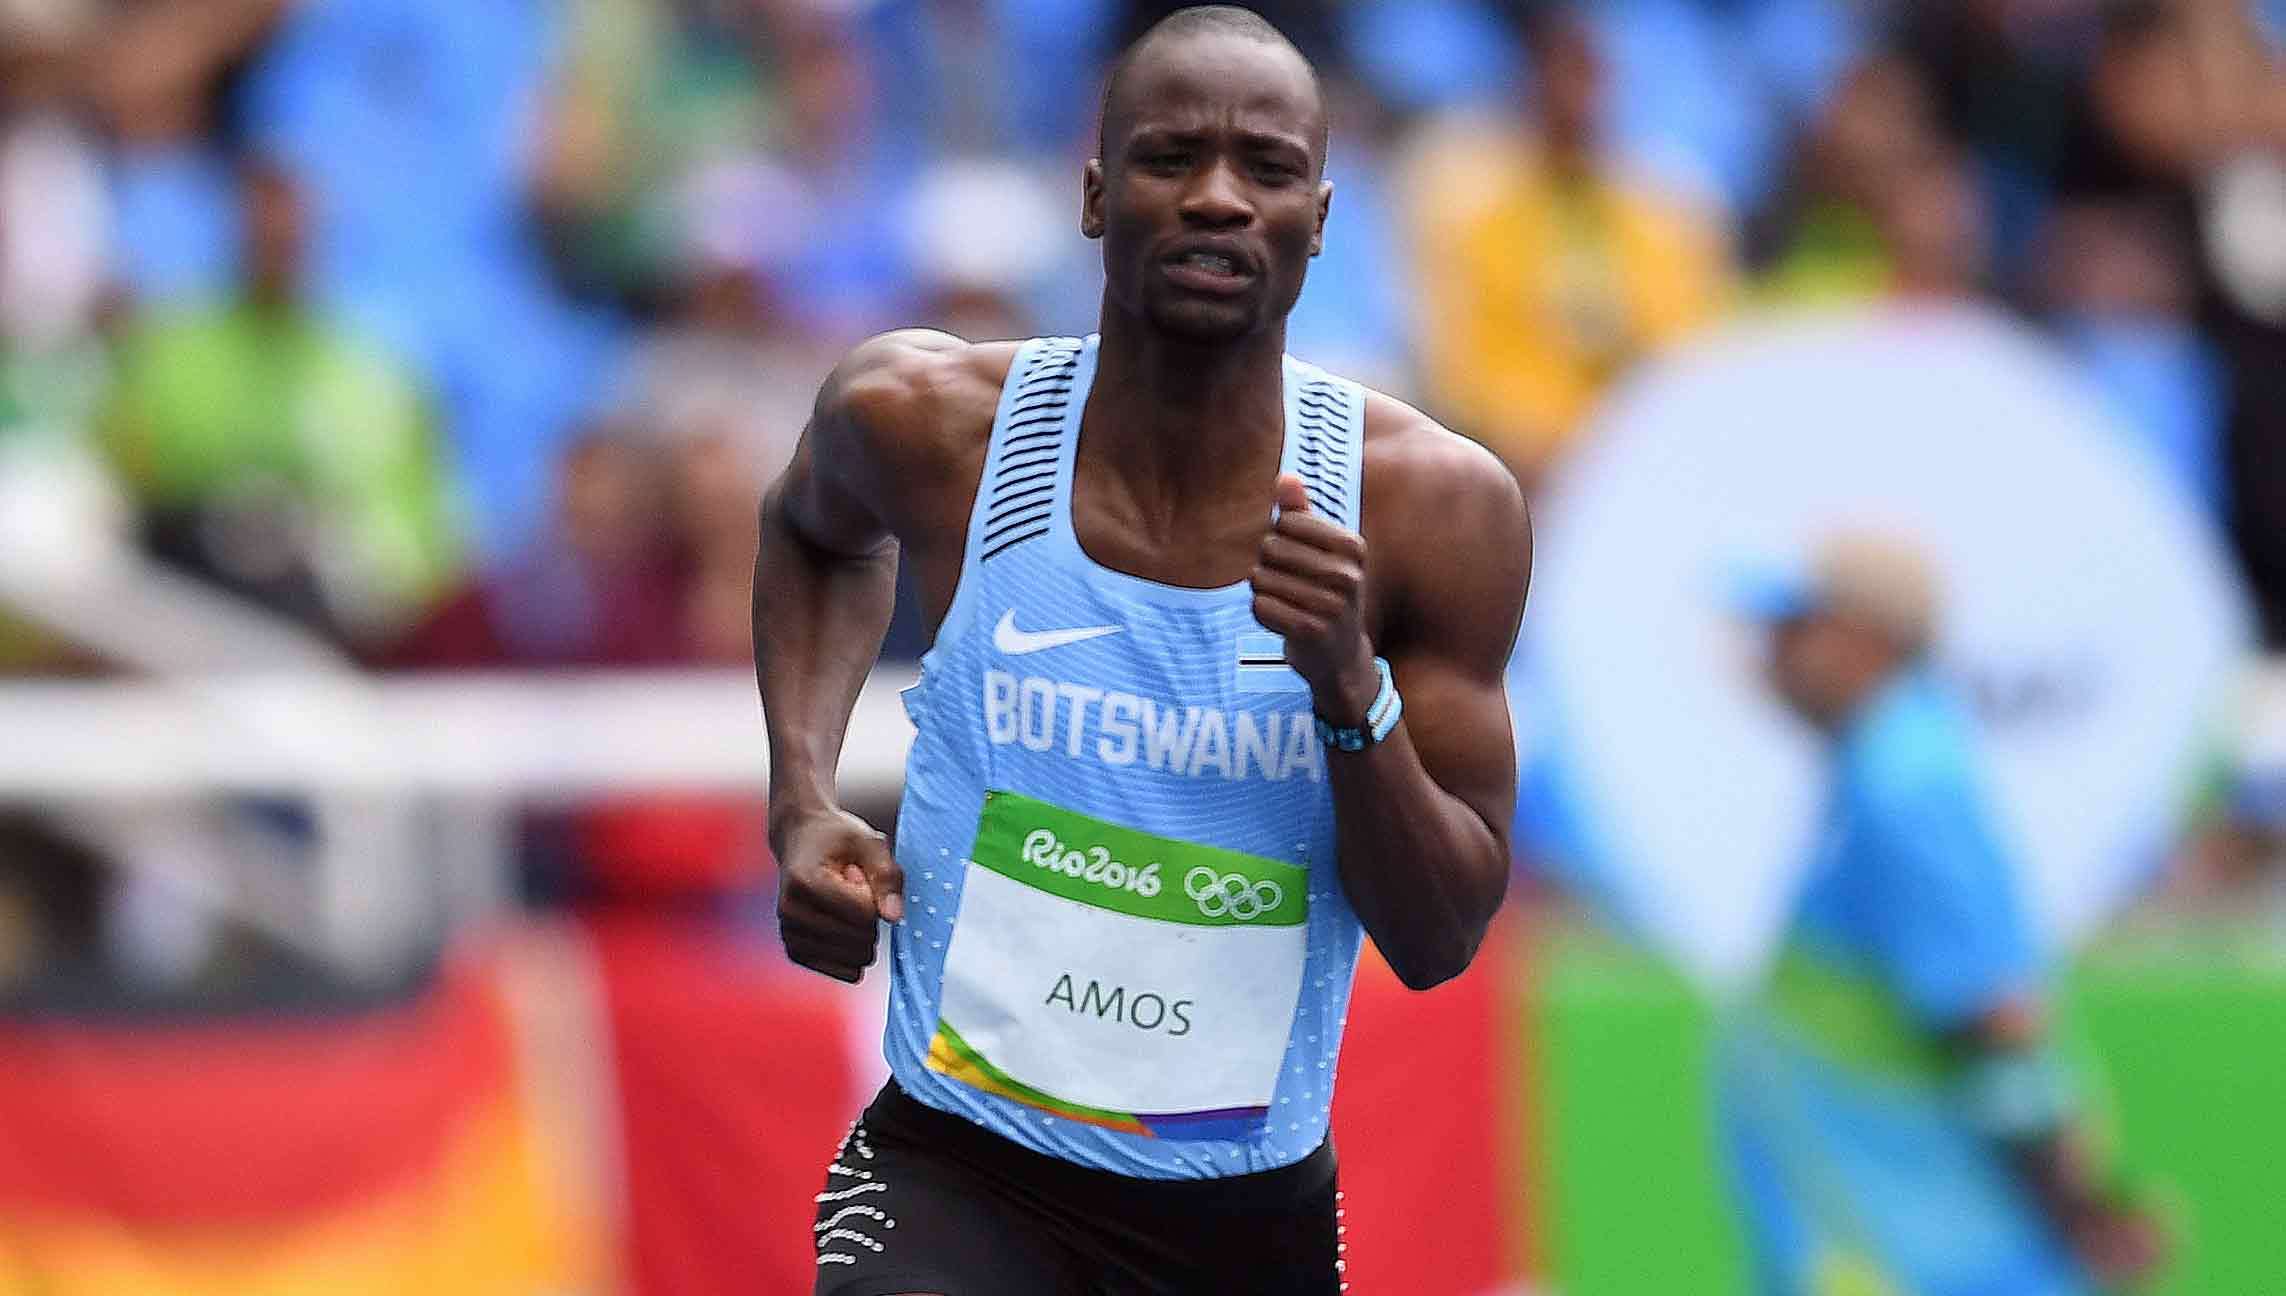 Призёр Олимпийских игр Амос дисквалифицирован за допинг перед чемпионатом мира